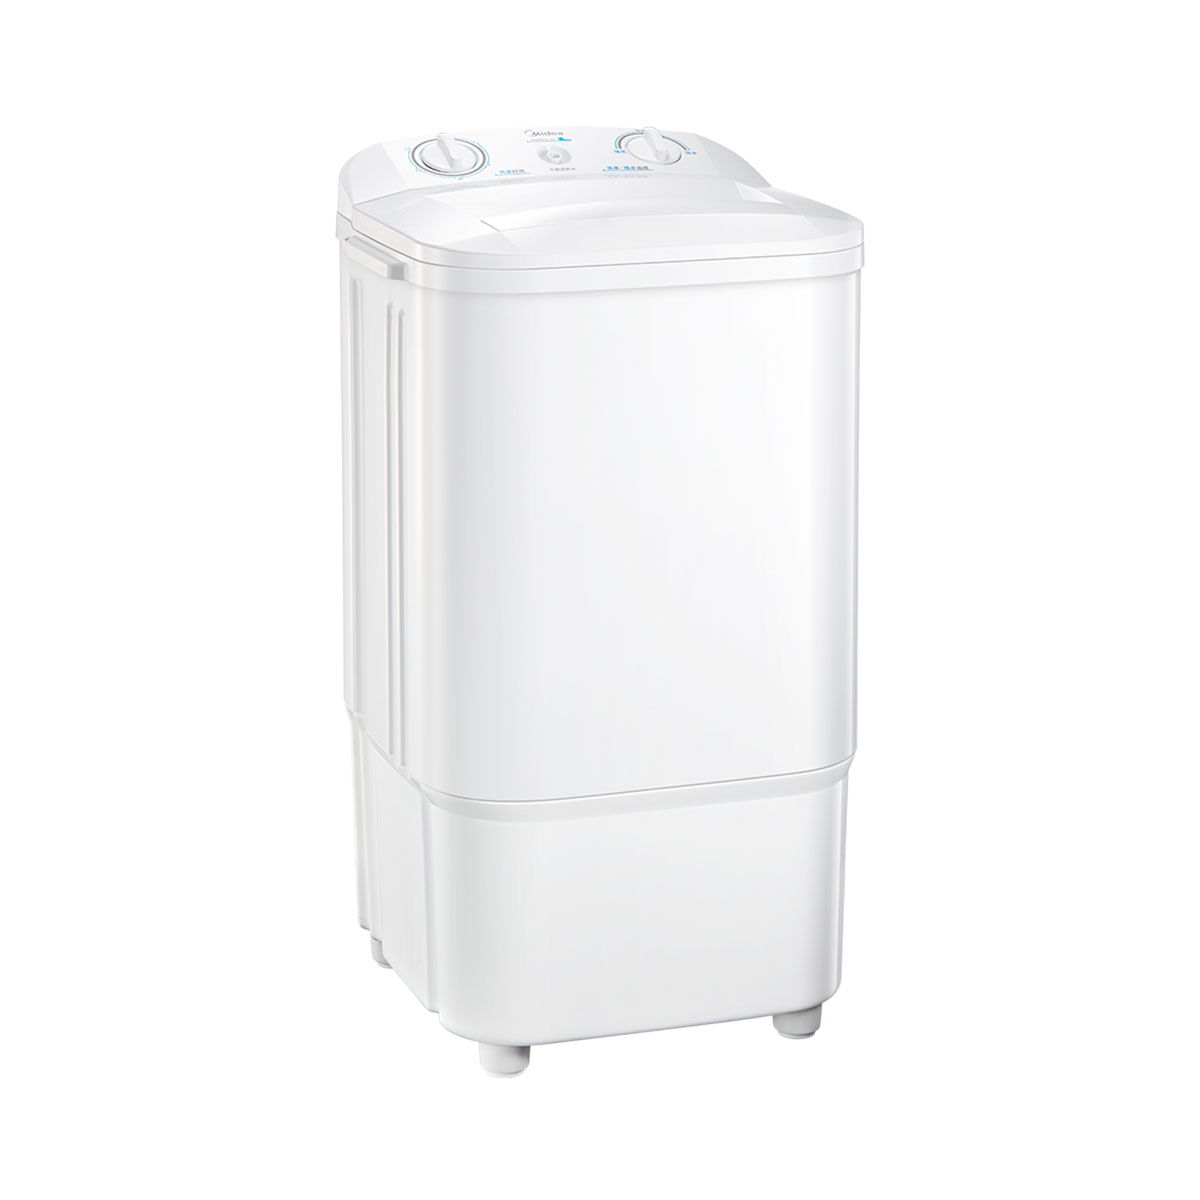 Midea/美的 MSP60-01洗衣机 说明书.pdf